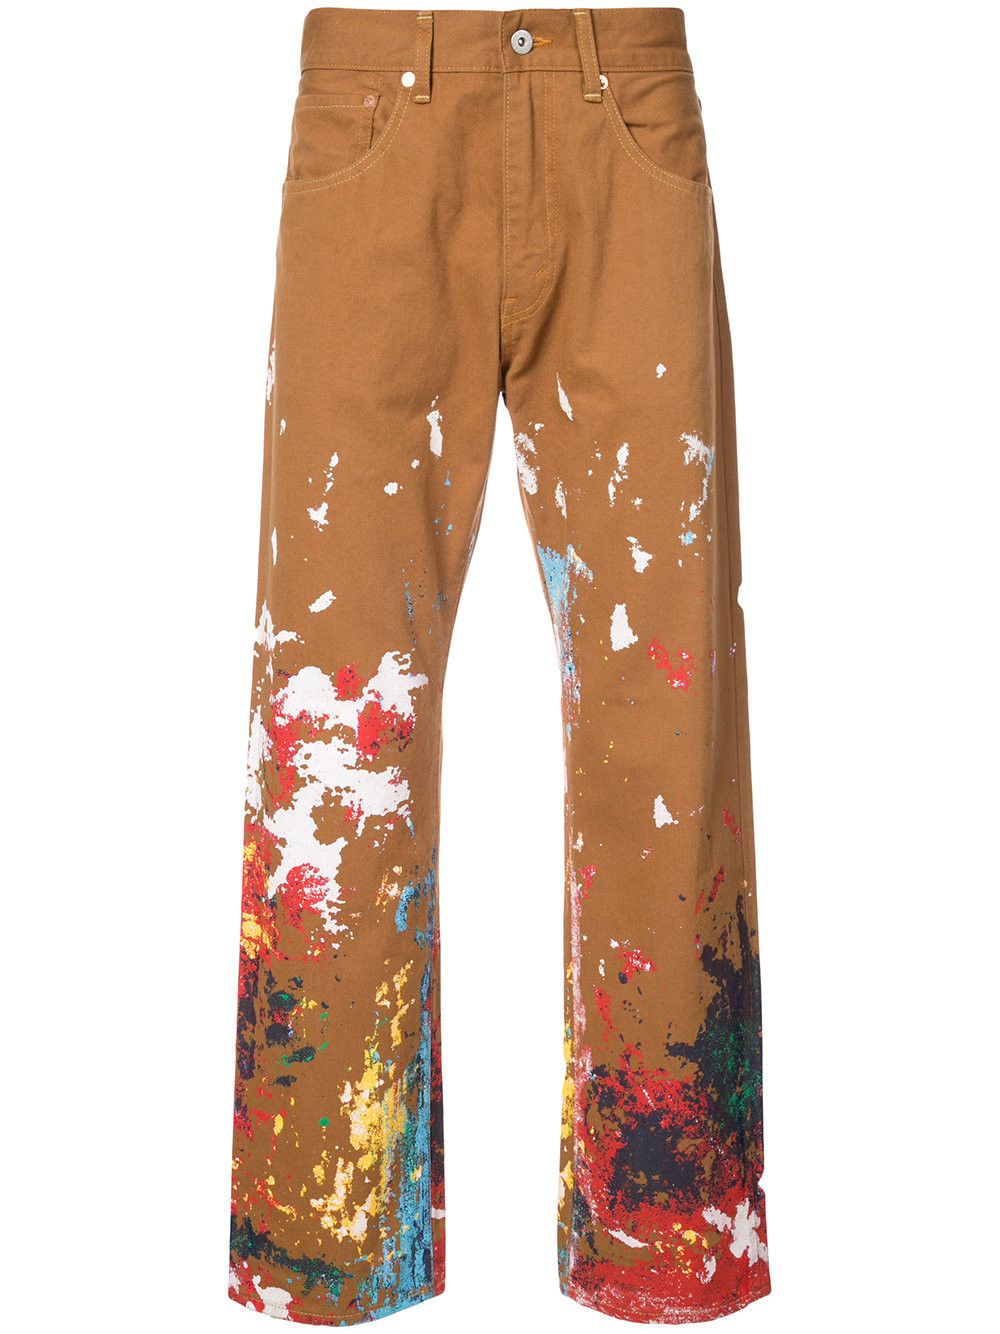 How to Wear Paint Splatter Jeans: Best 10 Boyish Outfit Ideas for Women